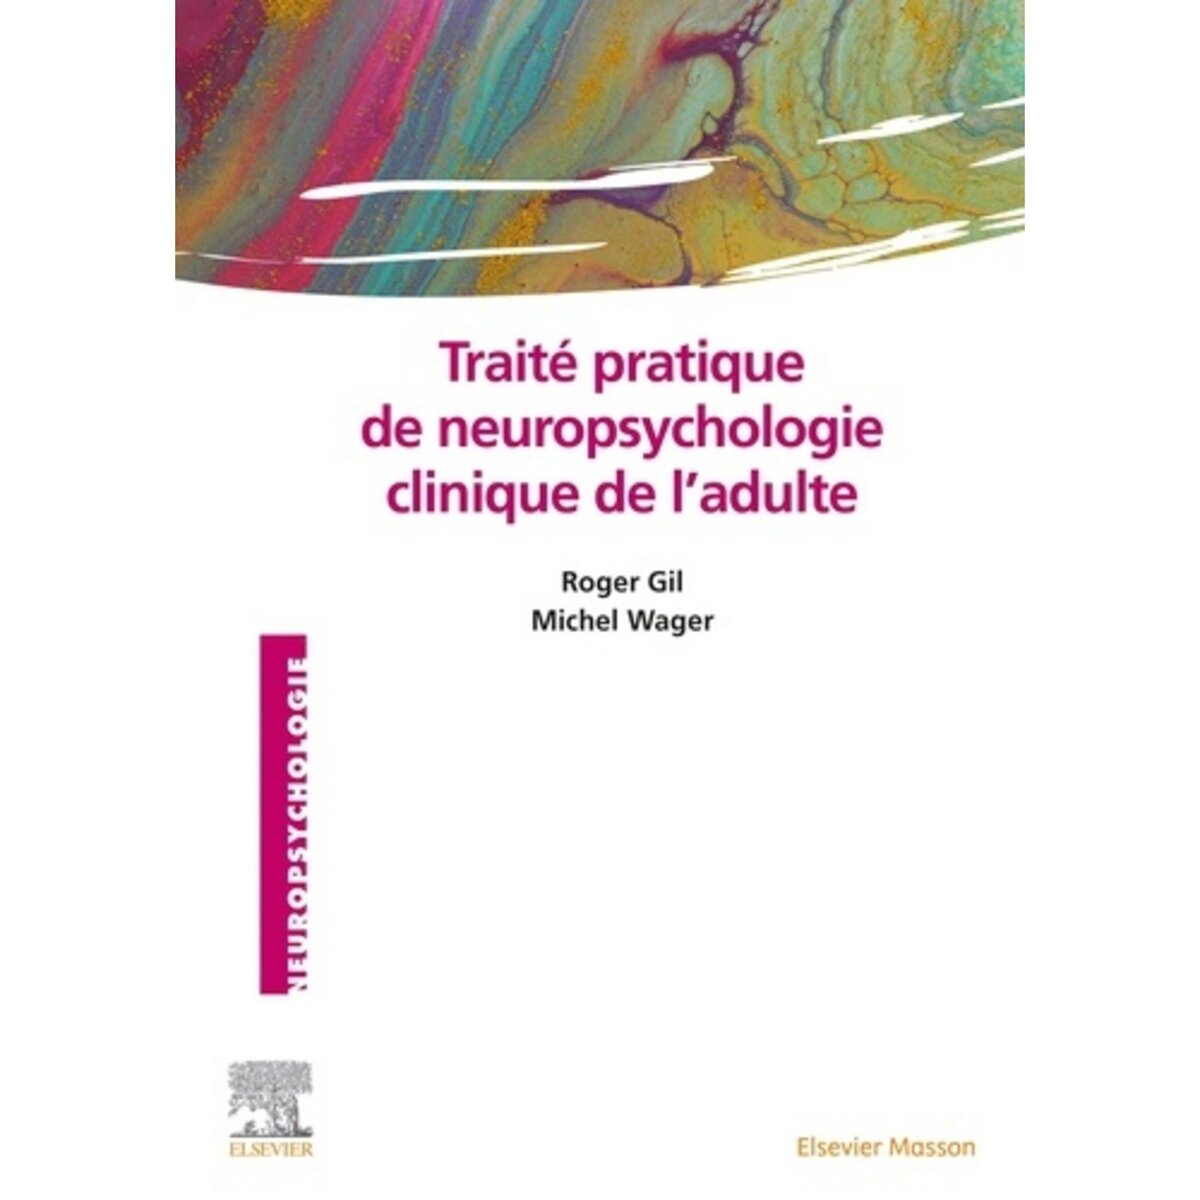  TRAITE PRATIQUE DE NEUROPSYCHOLOGIE CLINIQUE DE L'ADULTE, Gil Roger